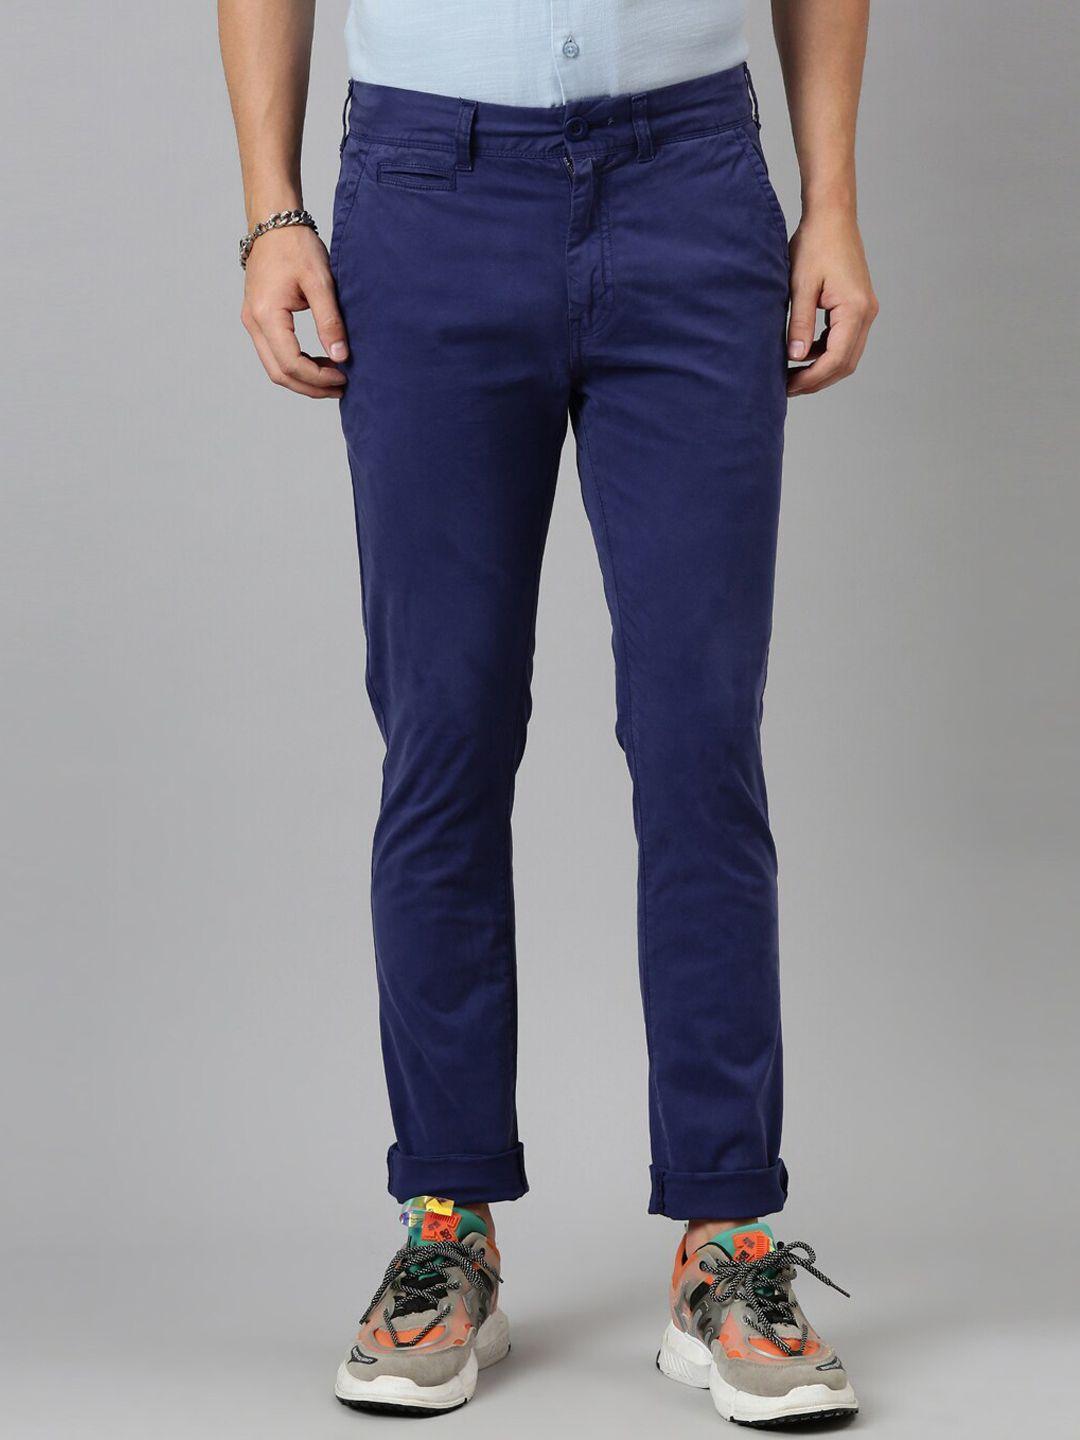 breakbounce-men-navy-blue-skinny-fit-low-rise-trousers